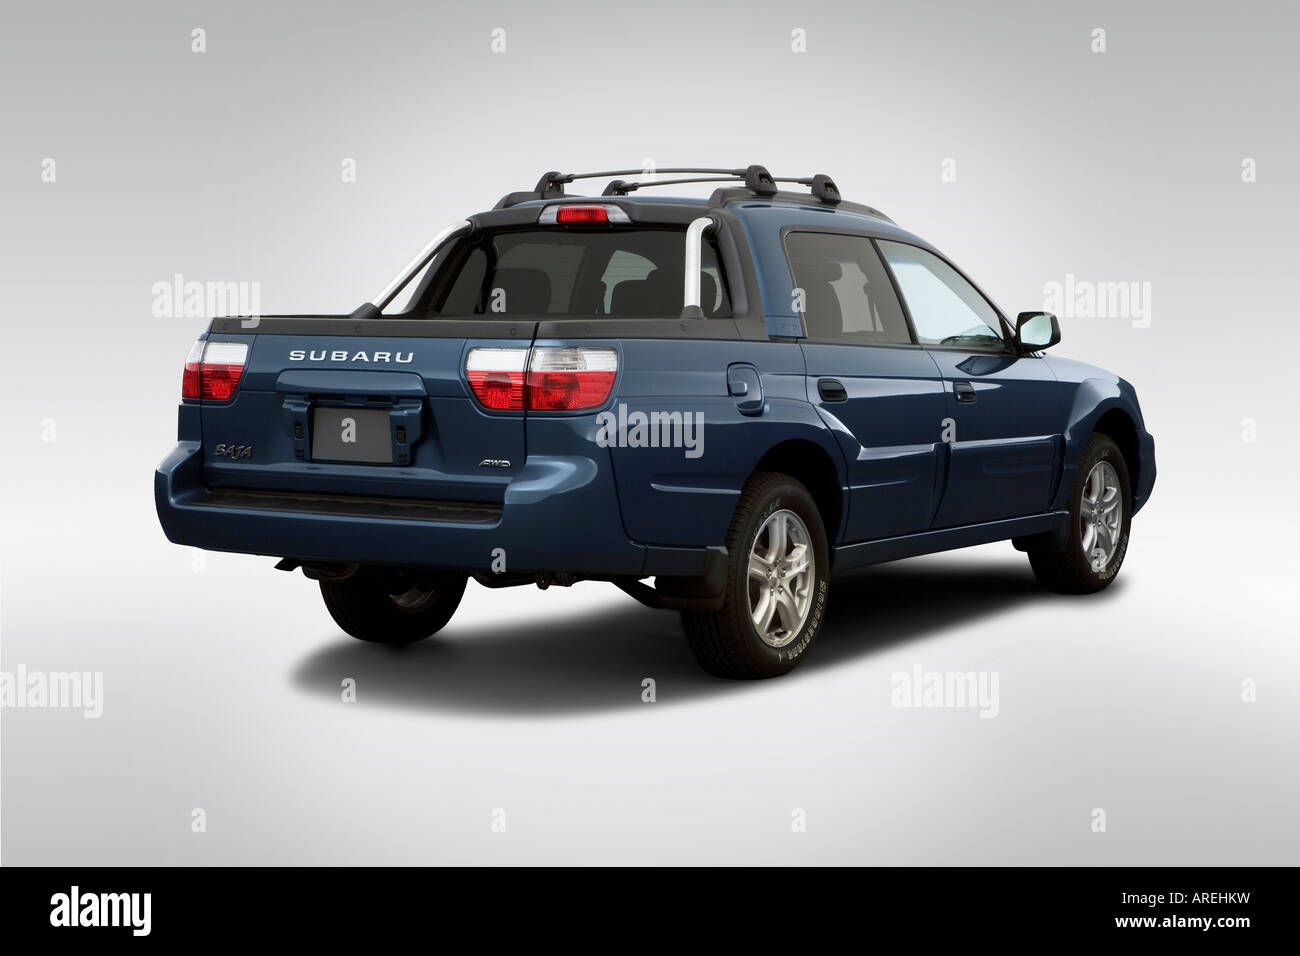 Subaru baja hi-res stock photography and images - Alamy